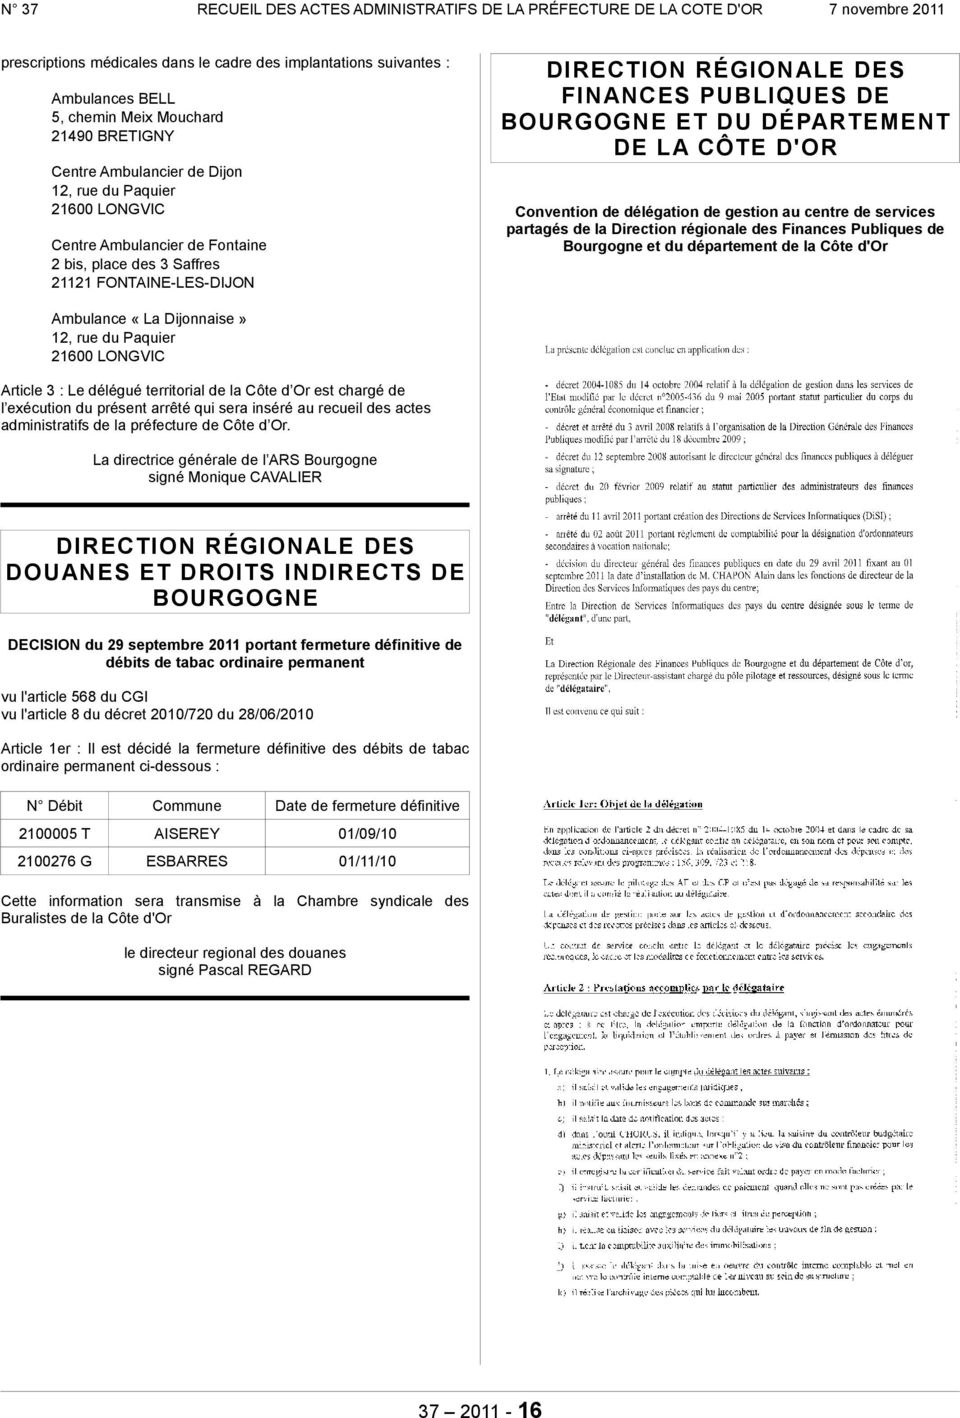 gestion au centre de services partagés de la Direction régionale des Finances Publiques de Bourgogne et du département de la Côte d'or Ambulance «La Dijonnaise» 12, rue du Paquier 21600 LONGVIC